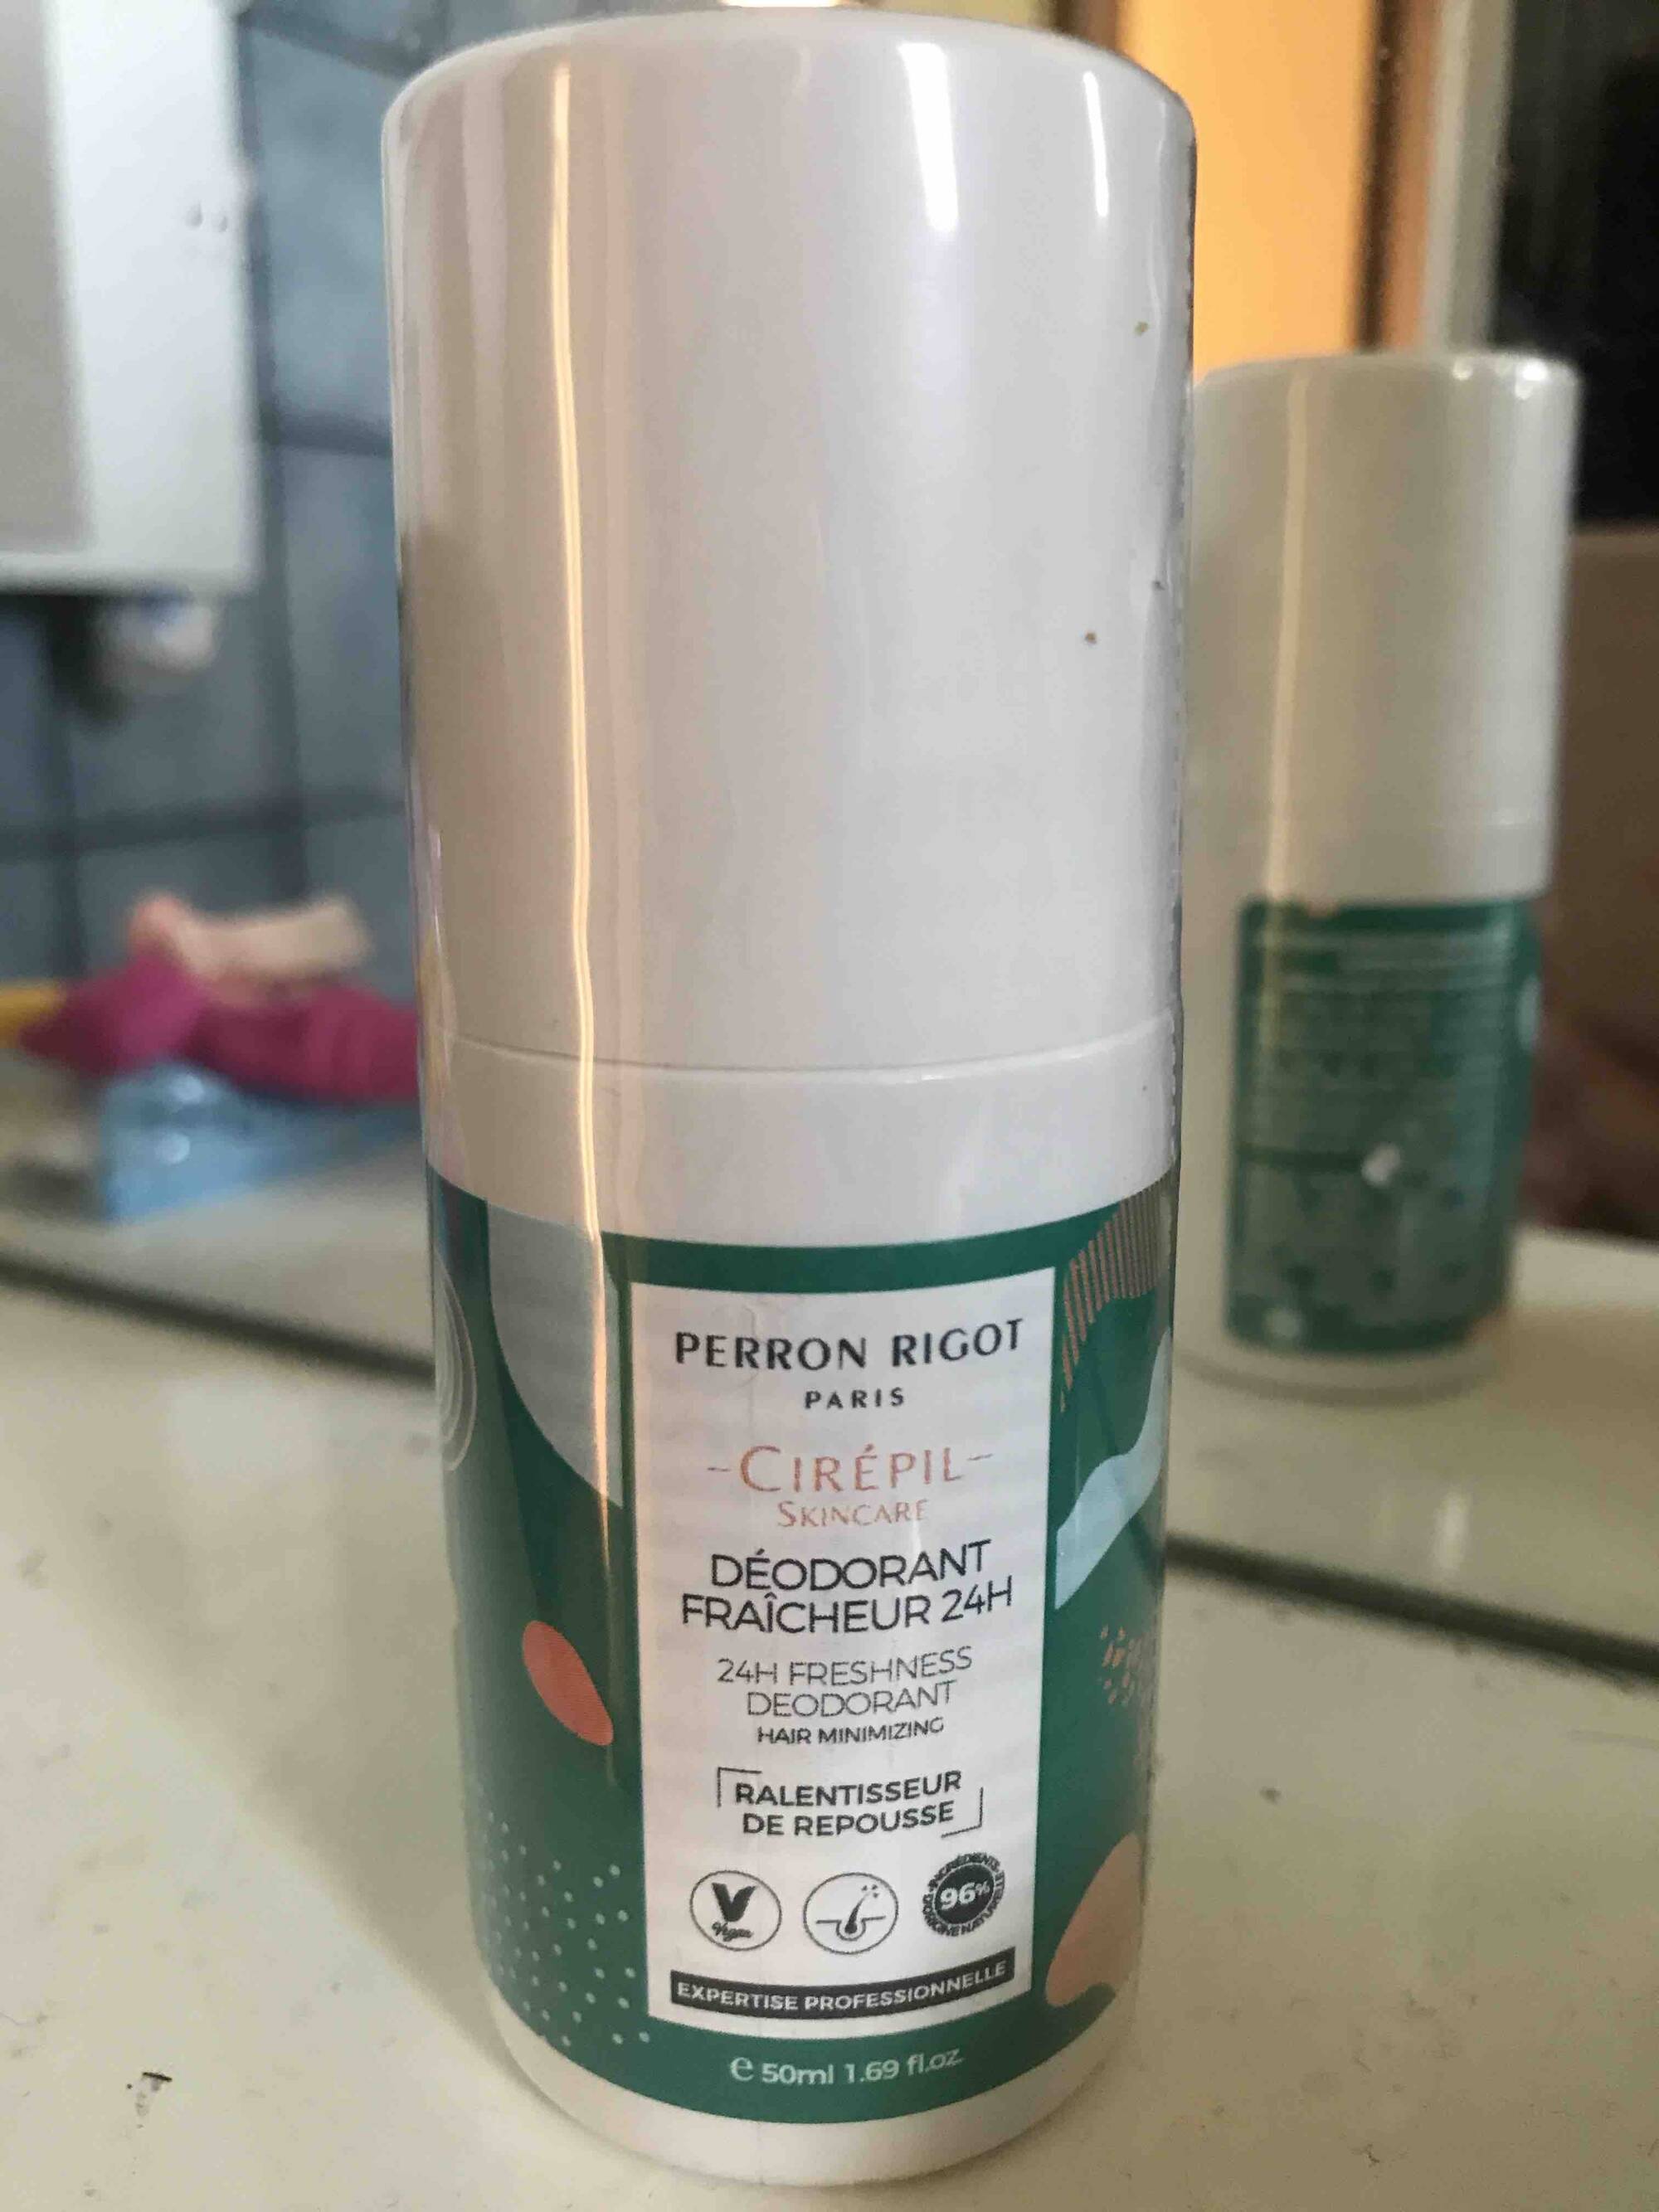 PERRON RIGOT - Cirépil - Déodorant fraîcheur 24h